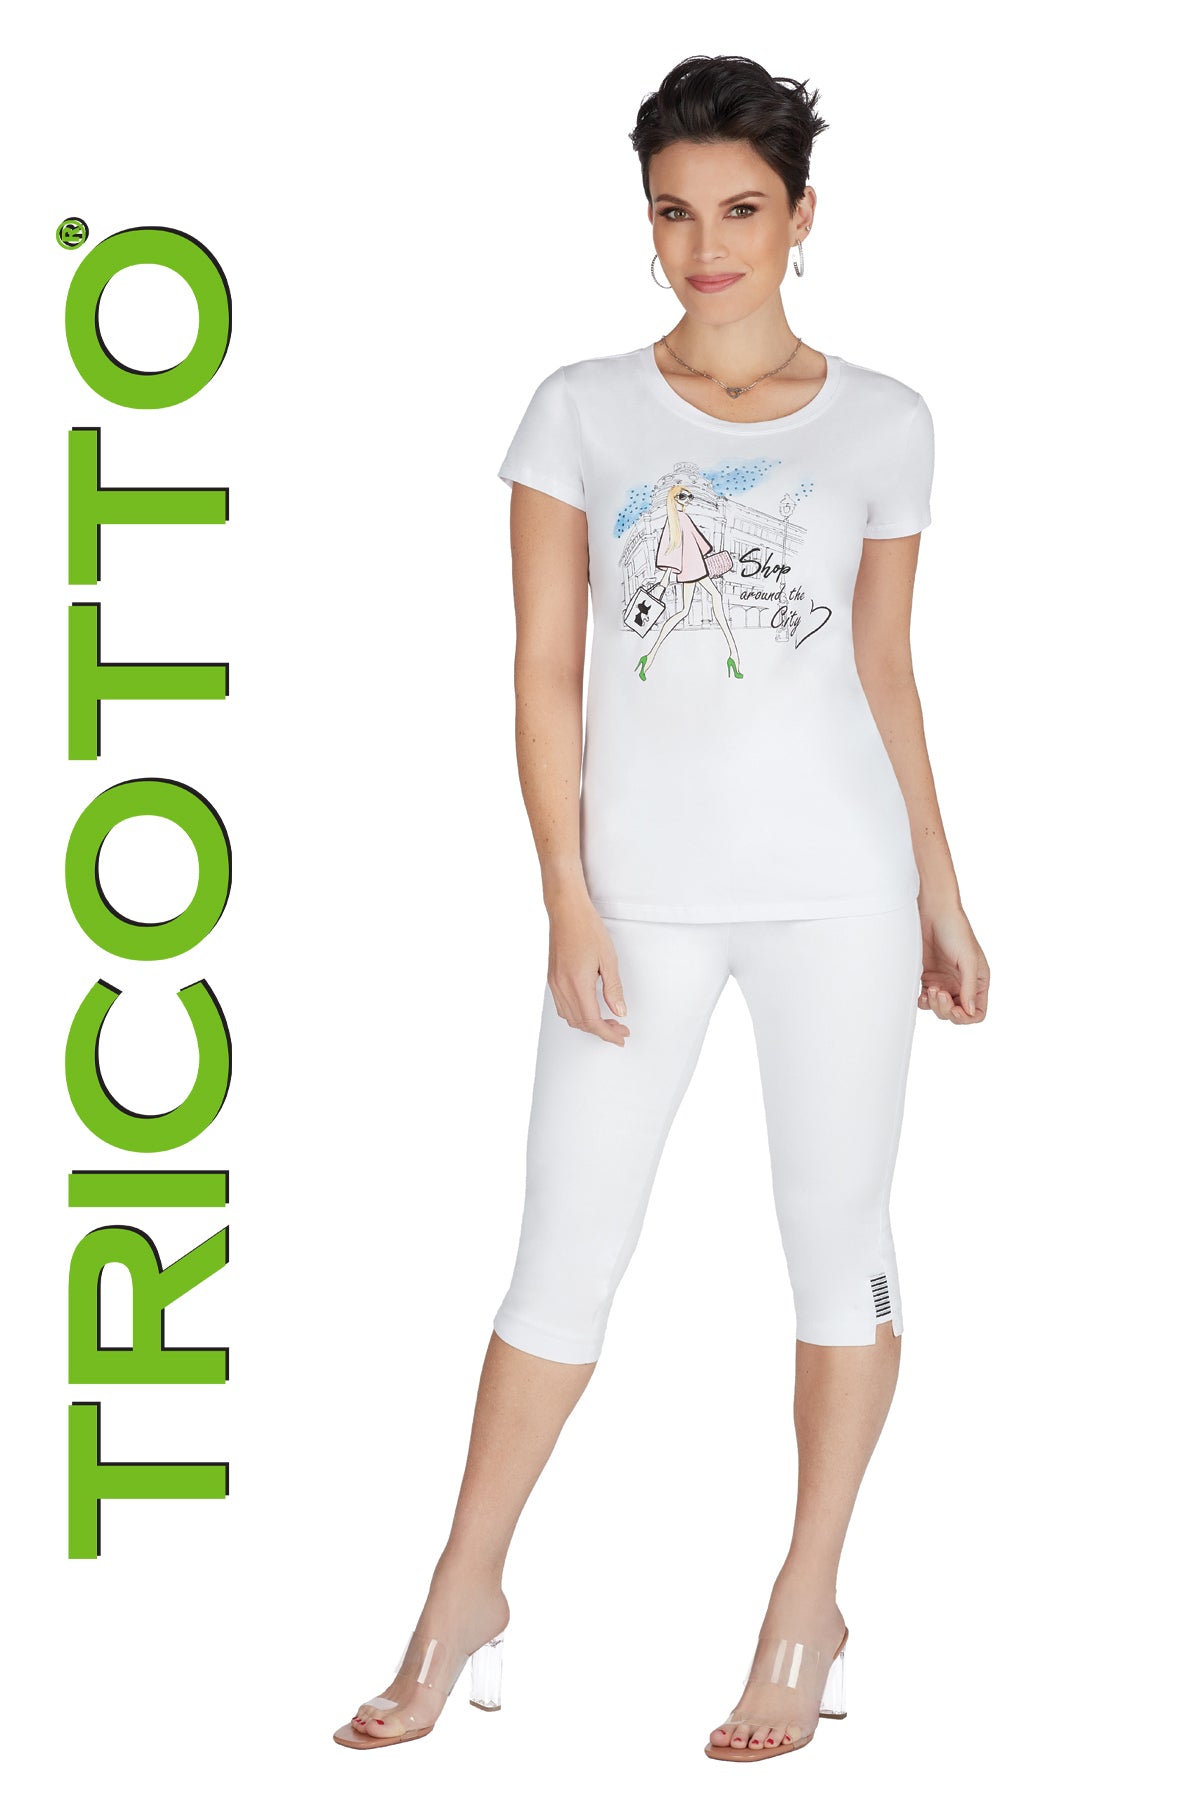 Tricotto White Capris-Tricotto Green Capris-Buy Tricotto Capris Online-Tricotto Clothing Montreal-Tricotto Clothing Quebec-Tricotto Online Shop